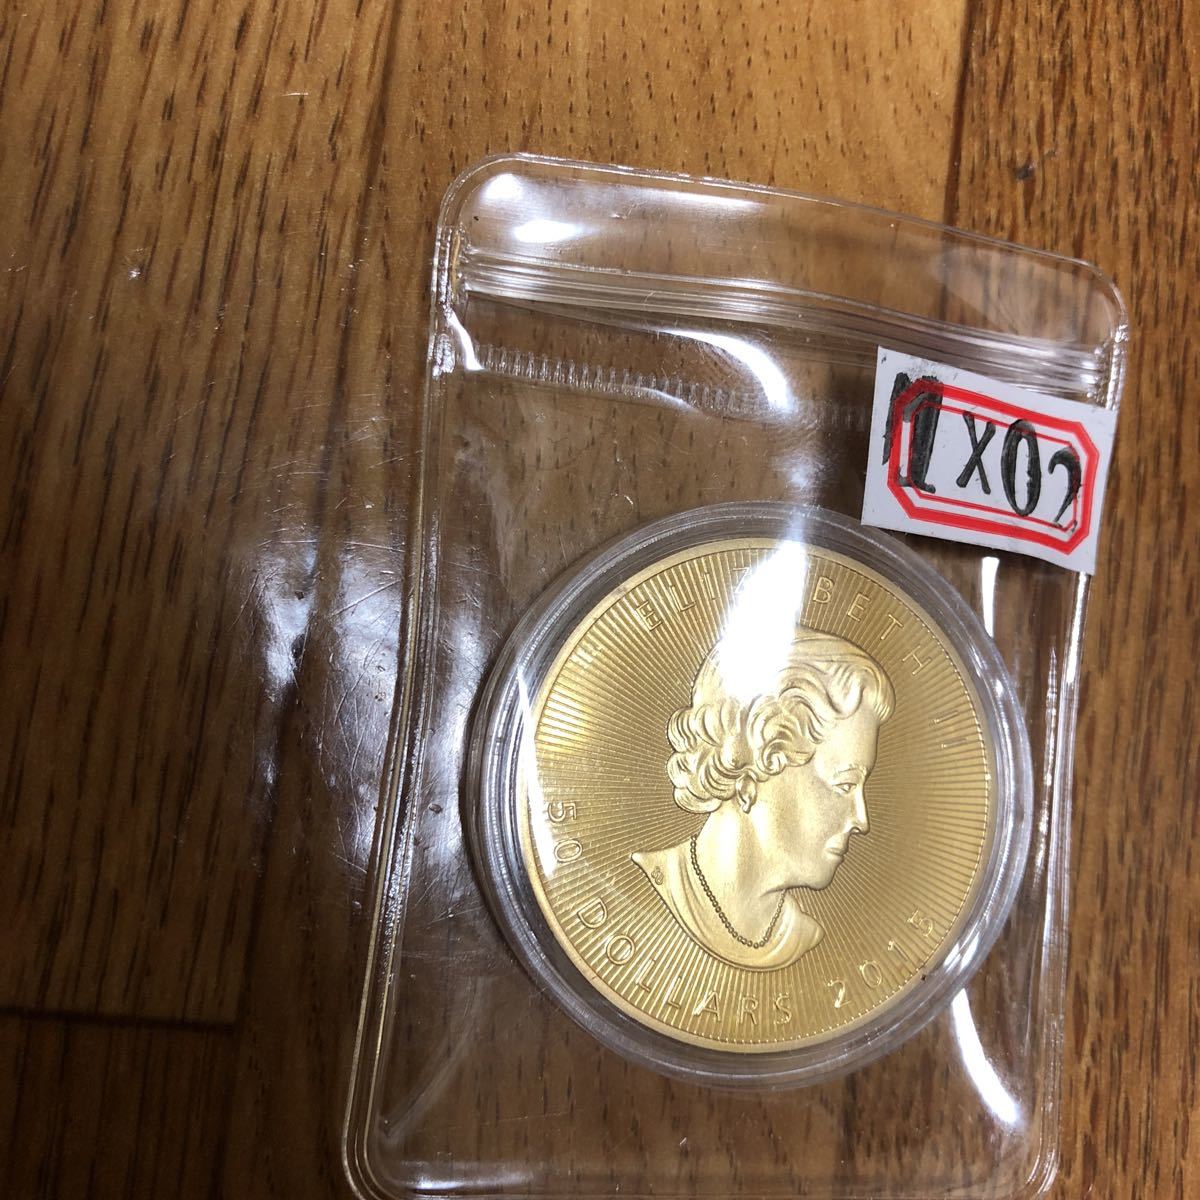 加拿大Momiji 1盎司紀念金幣2015， 原文:2015年 カナダ モミジ 1オンス記念金貨、